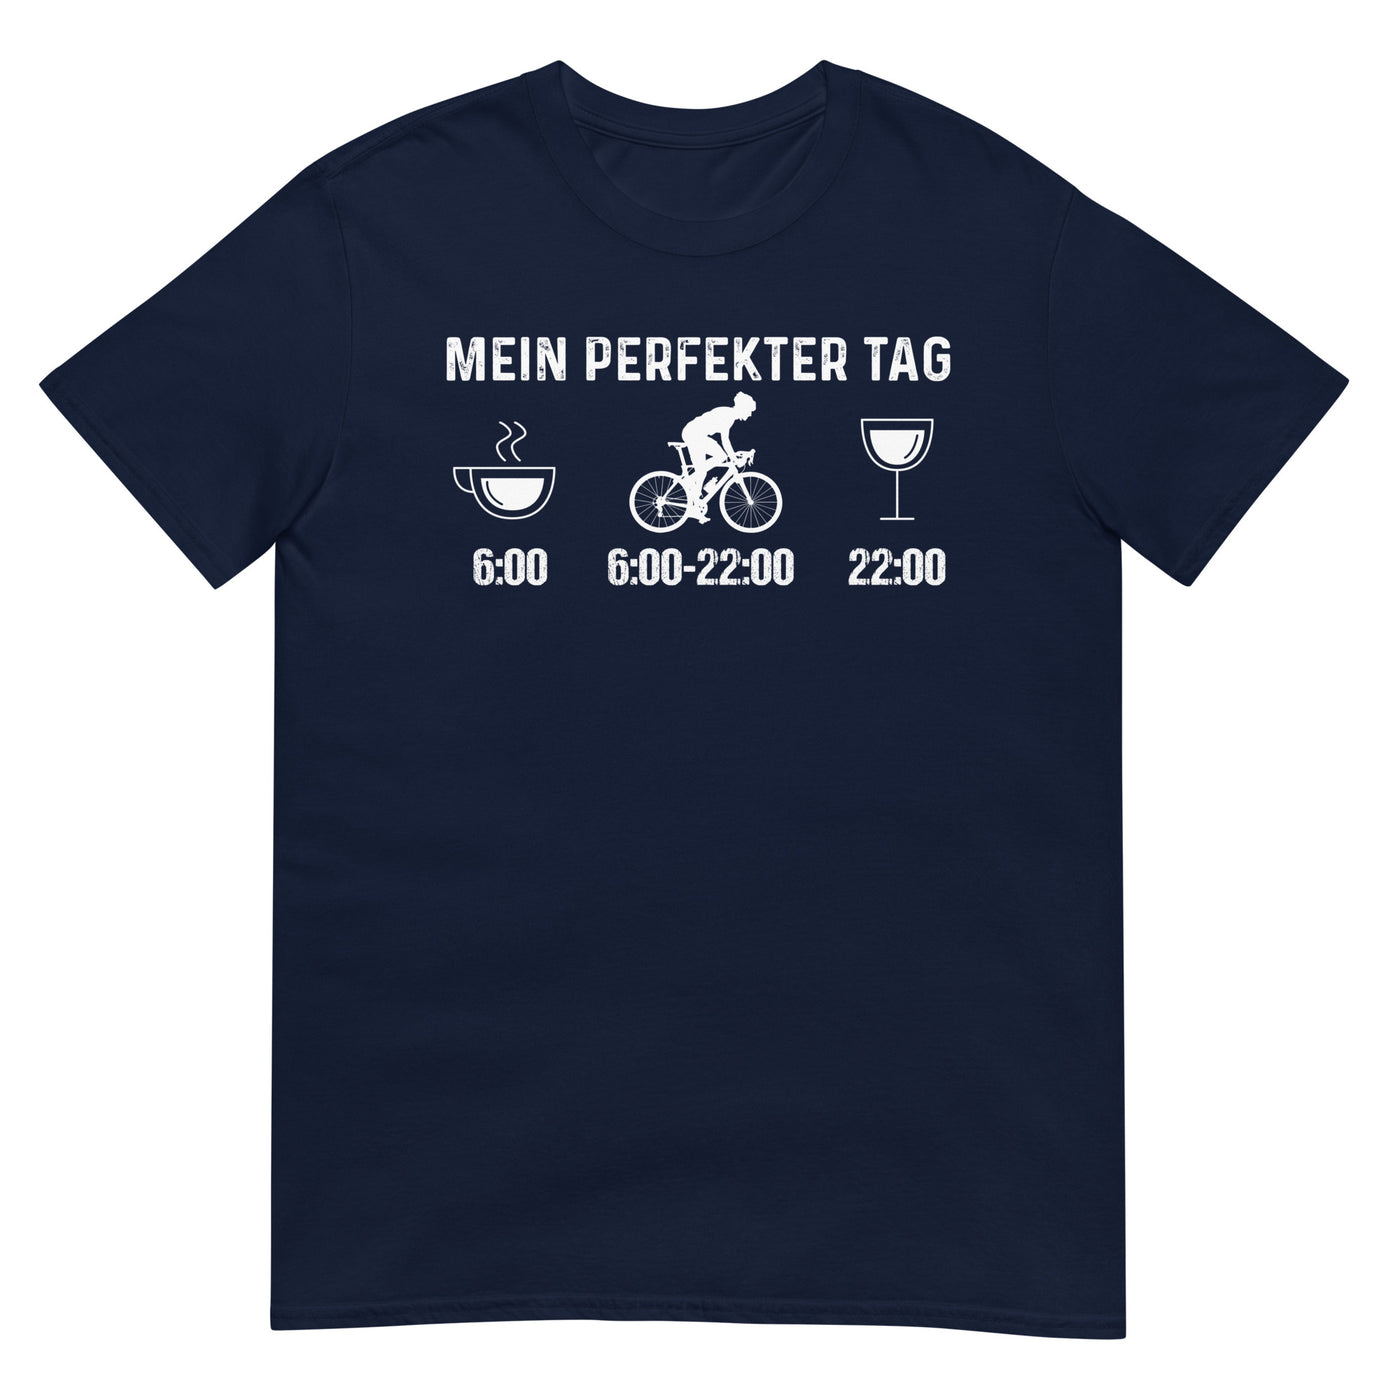 Mein Perfekter Tag 1 - T-Shirt (Unisex) fahrrad xxx yyy zzz Navy